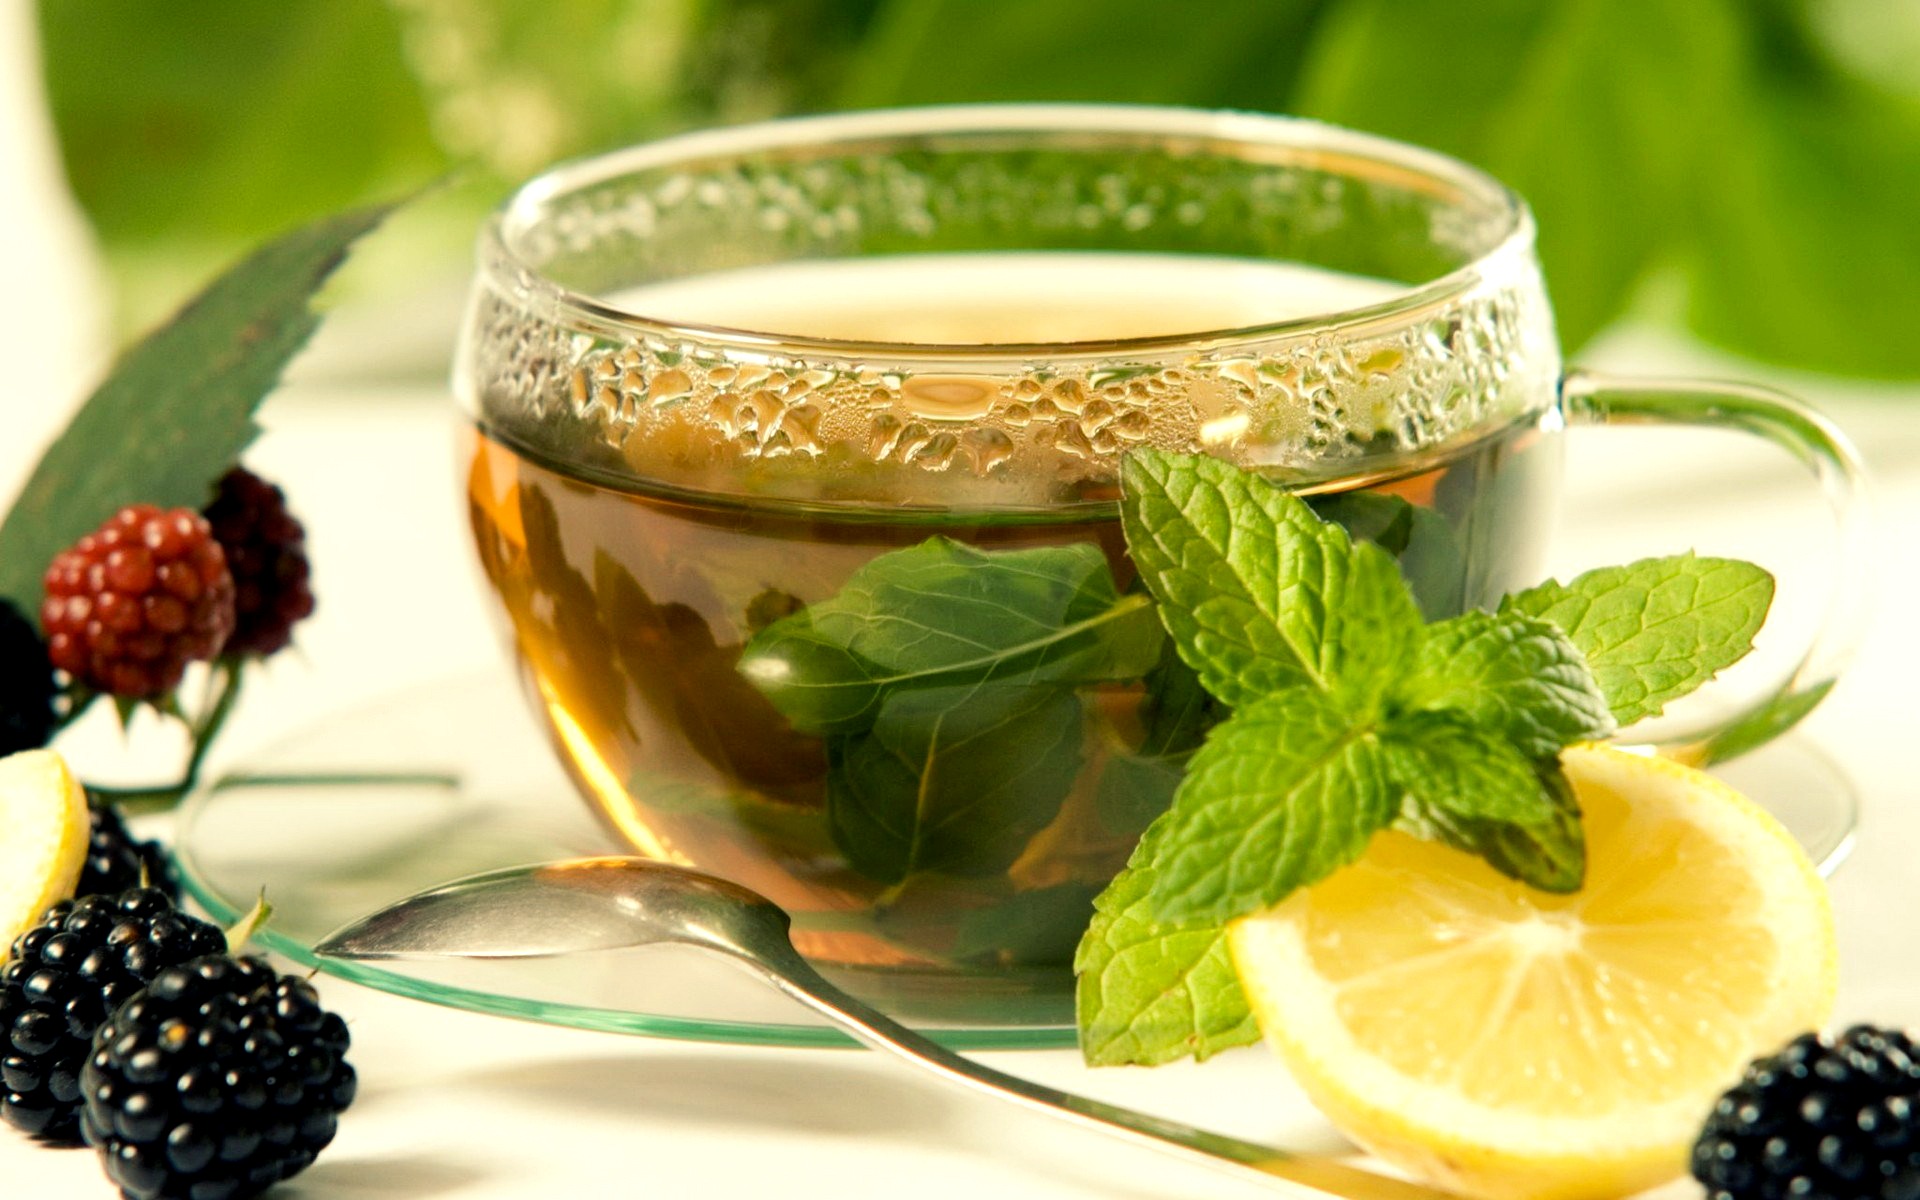 तुलसी की चाय के फायदे